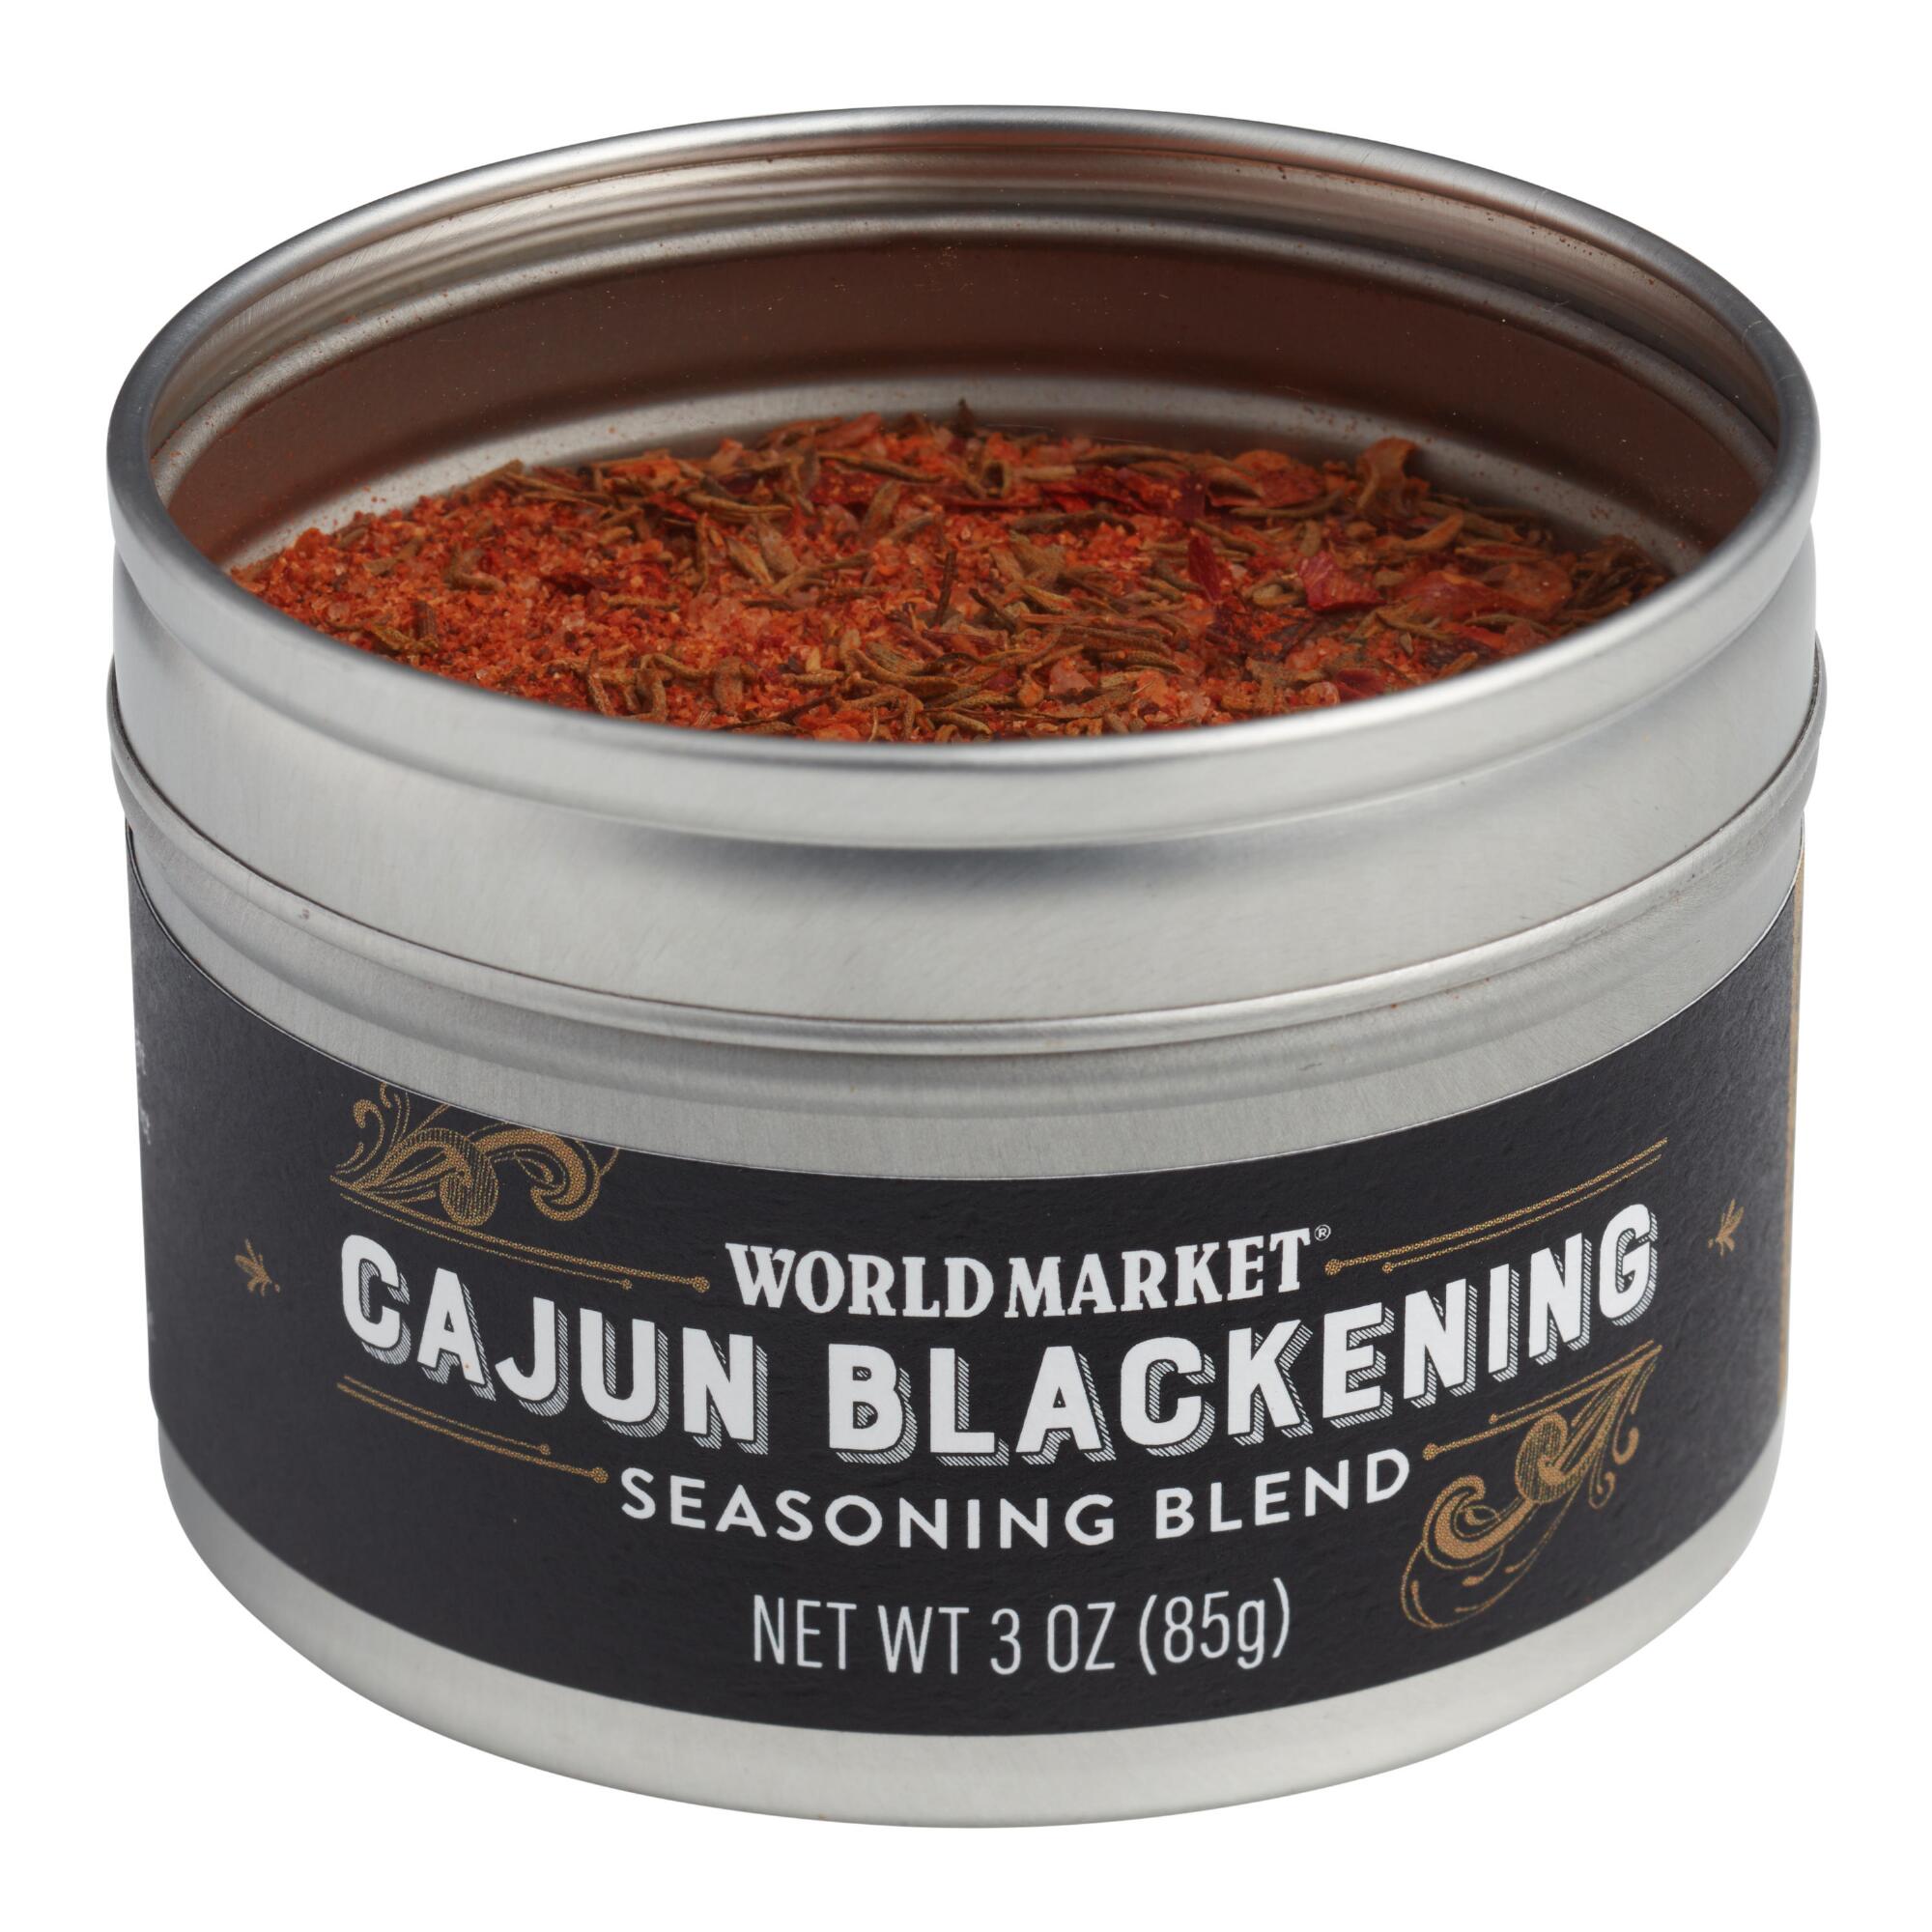 World Market Cajun Blackening Spice Blend by World Market